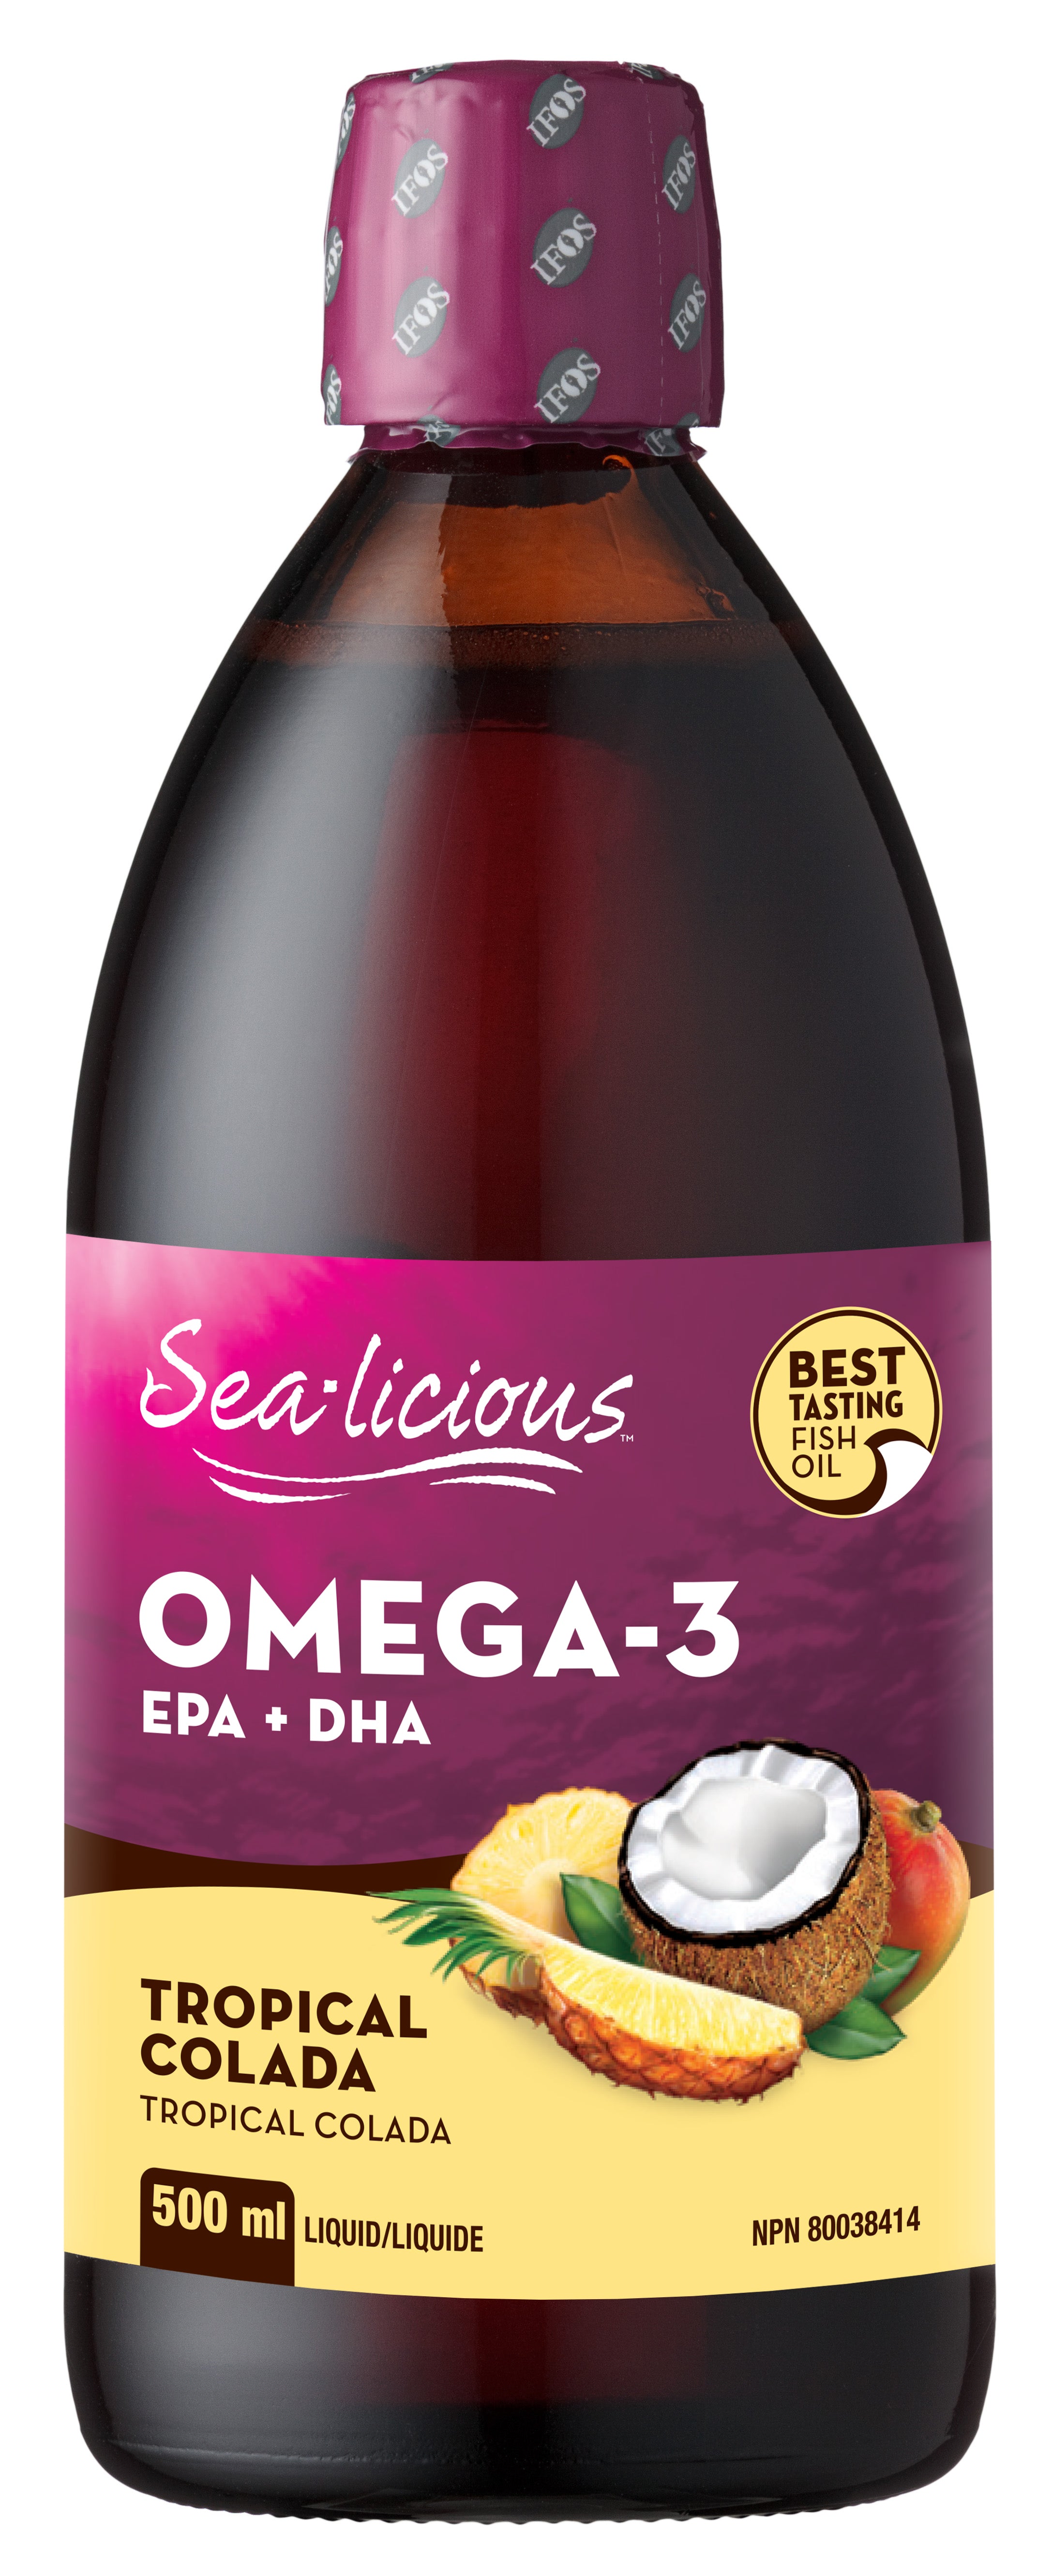 Sea-licious Omega-3 Tropical Colada 500mL